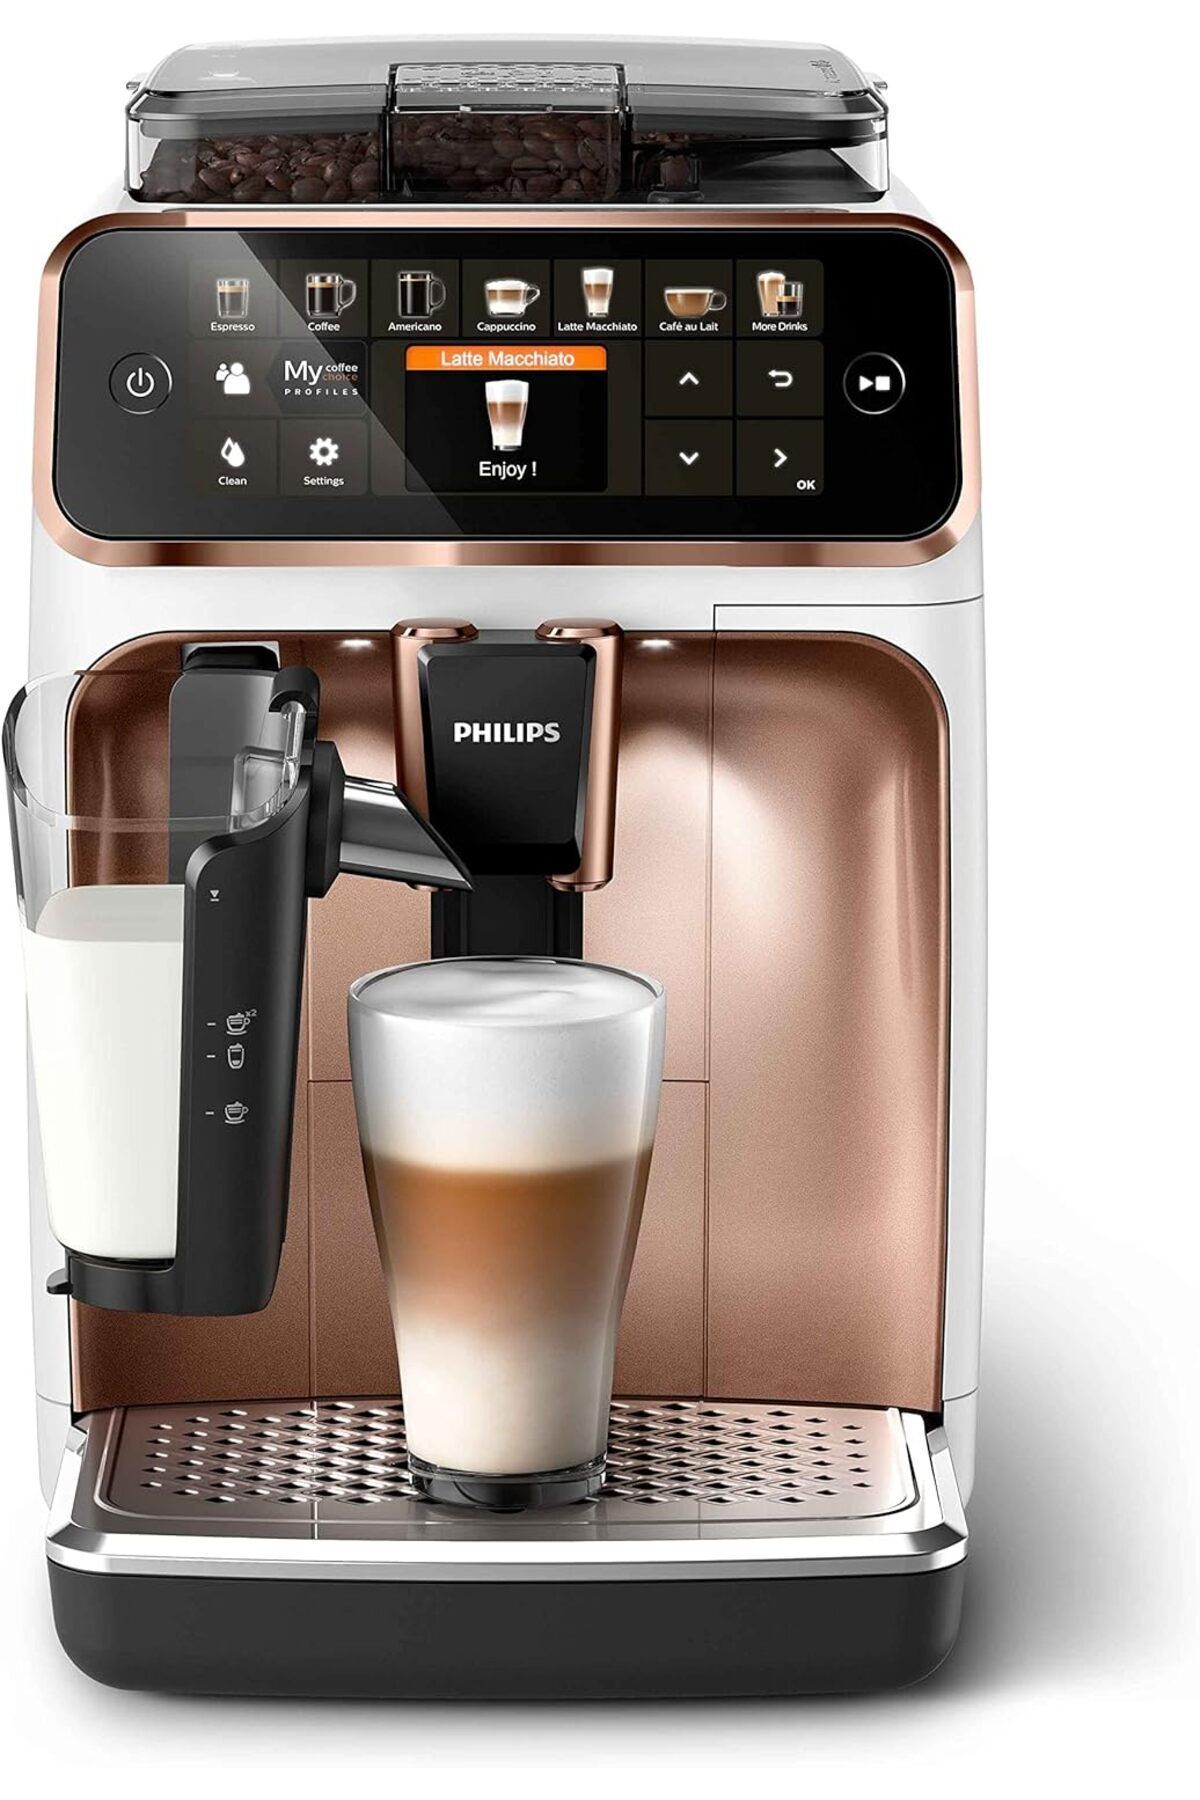 Philips Premium Tam Otomatik Espresso Makinesi, 12 Çeşit Kahve - 20.000 Bardak Üstün Kaliteli Kahve